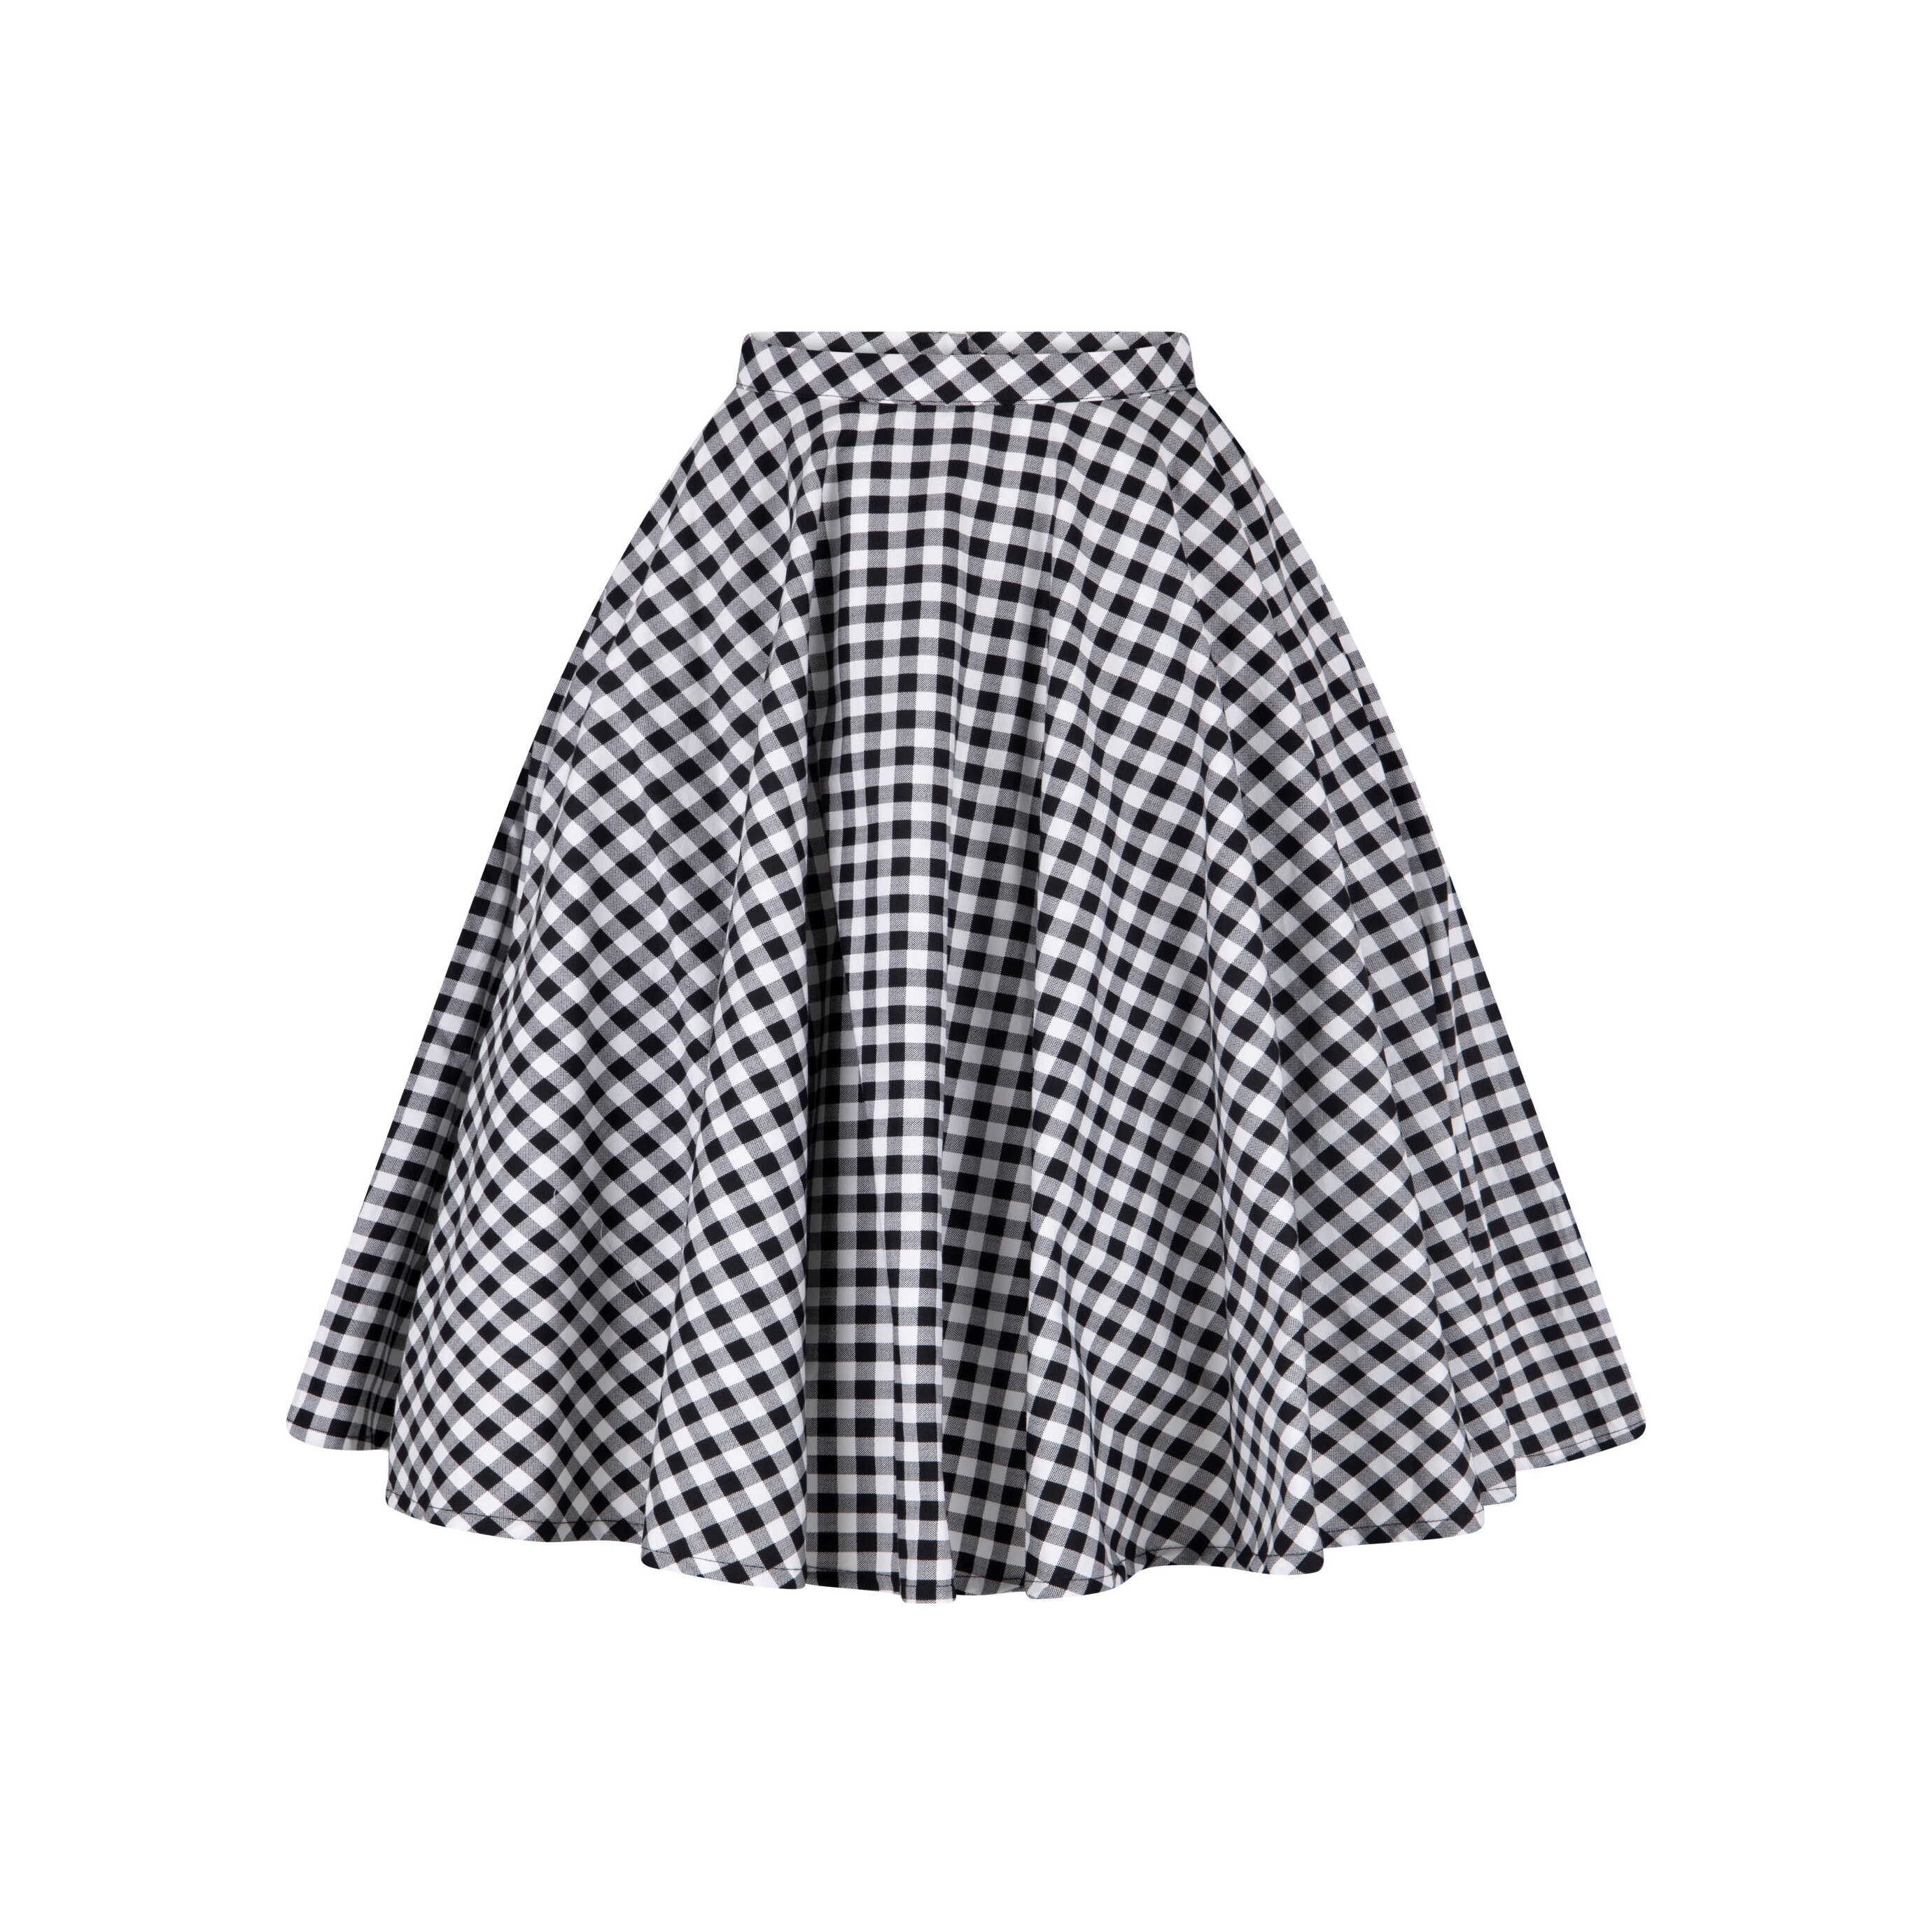 Black Gingham Skirt with Pockets Checkered Skirt Full Circle | Etsy